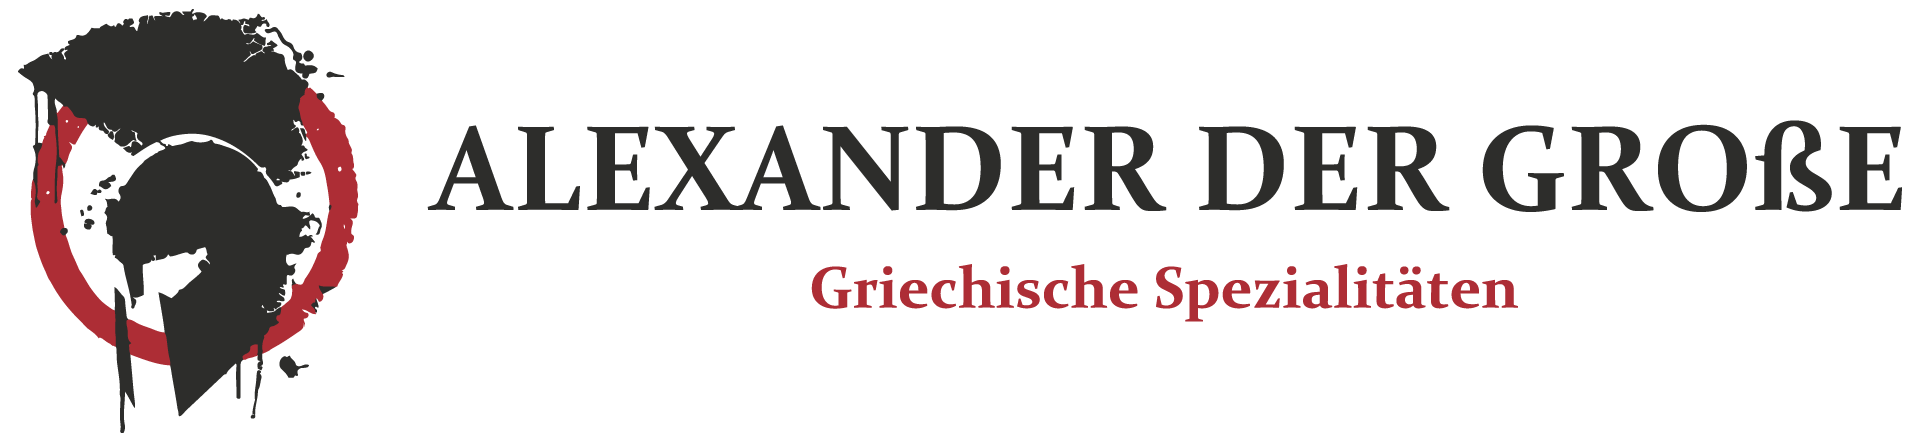 Griechische Spezialitäten - Alexander der Große - Bad Meinberg